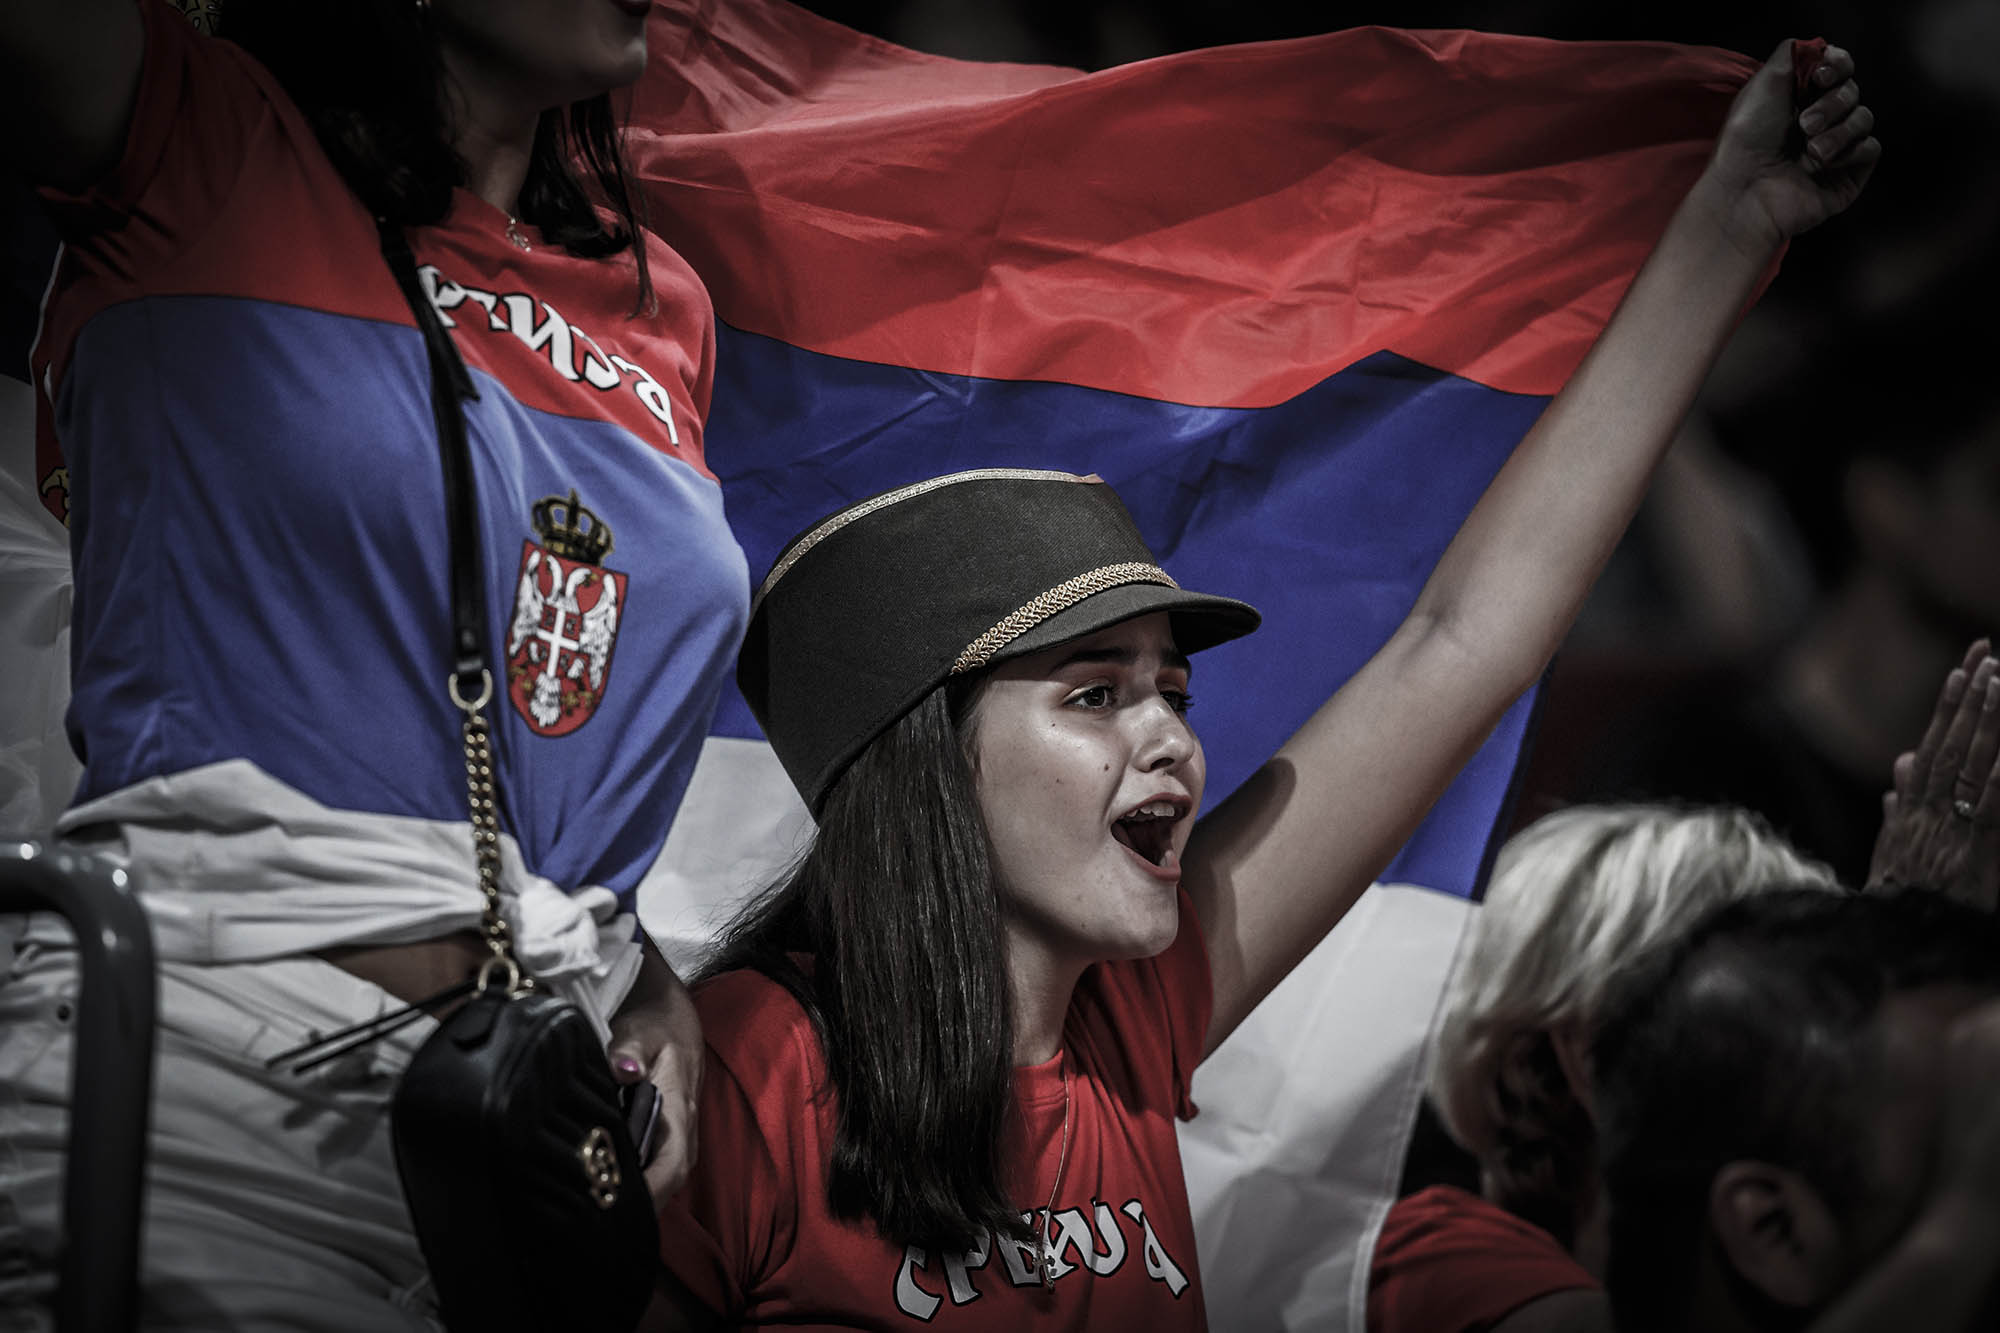 Serbian Fans